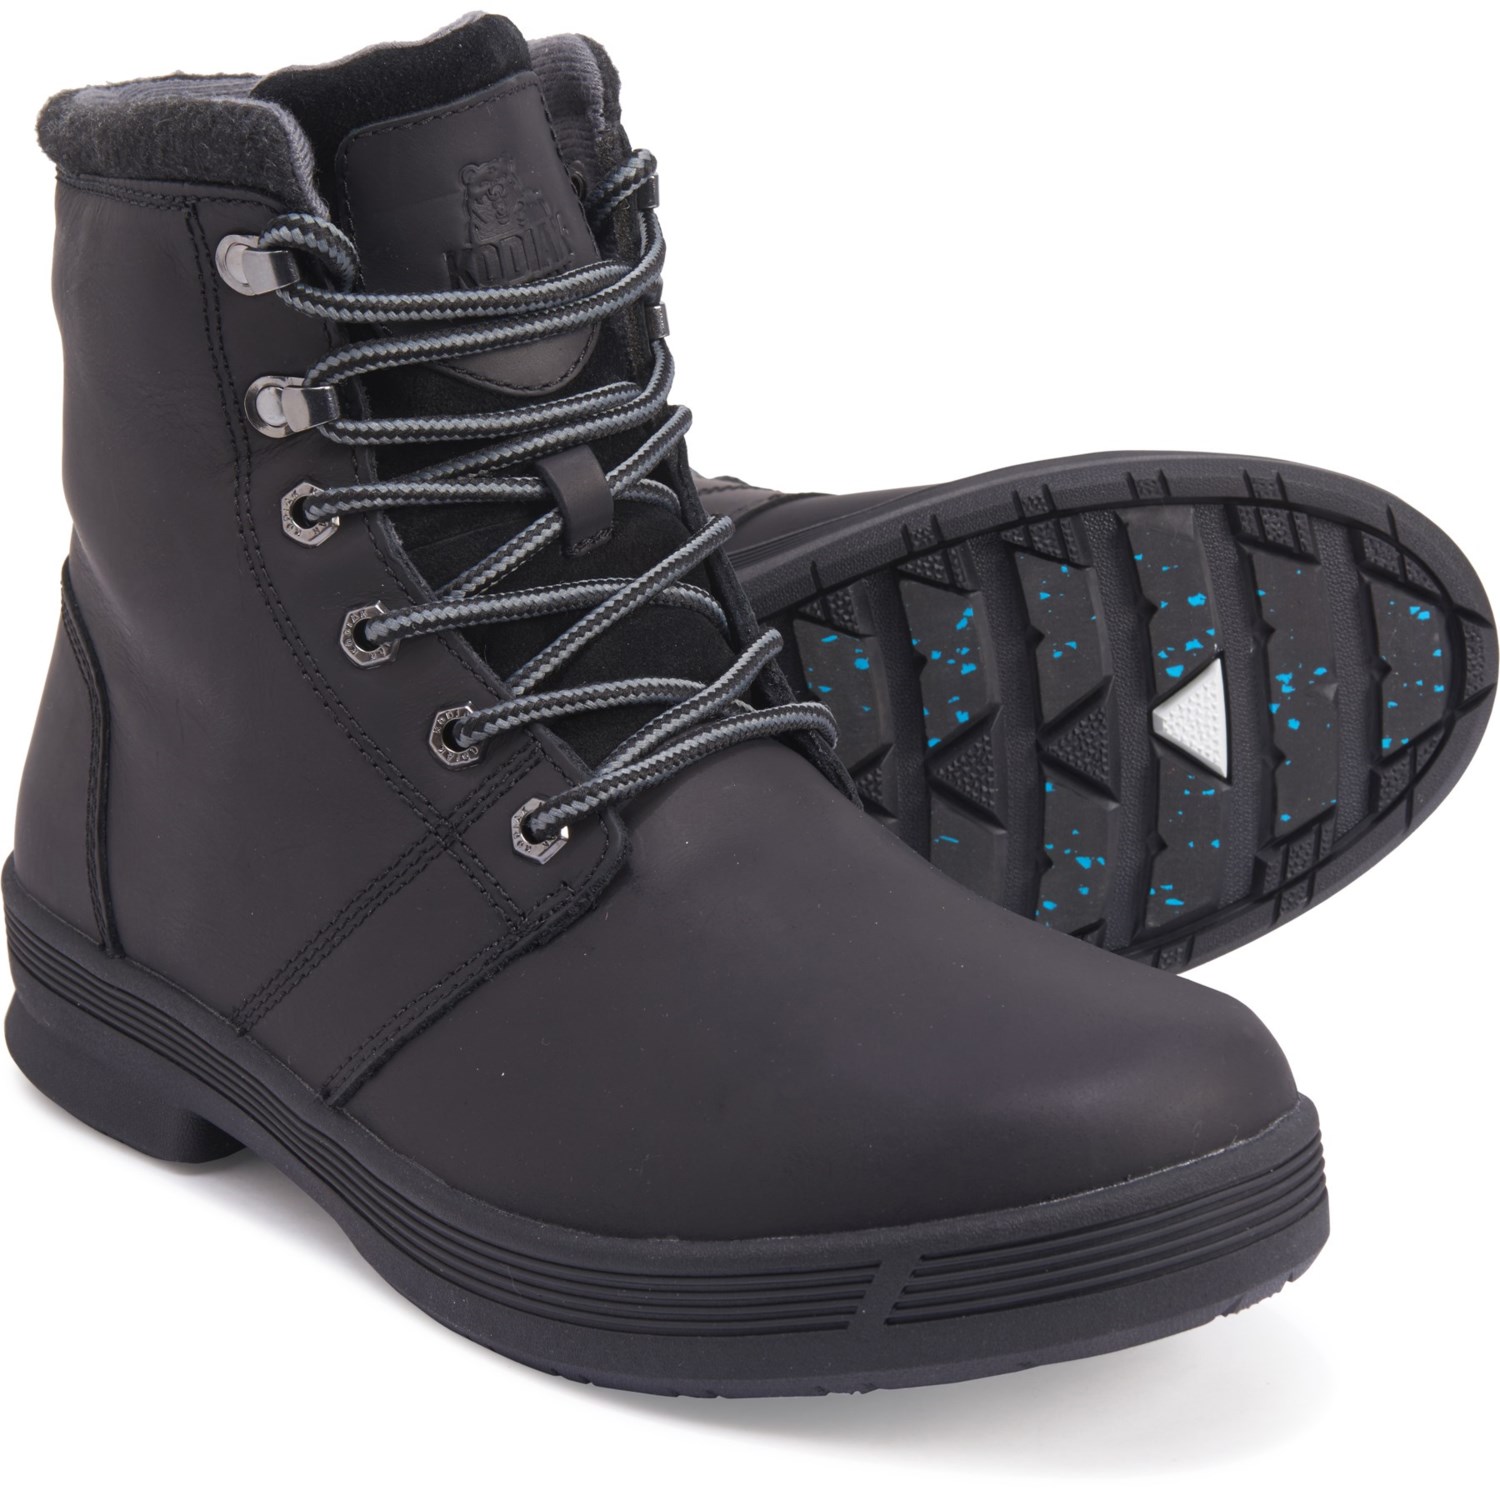 kodiak snow boots